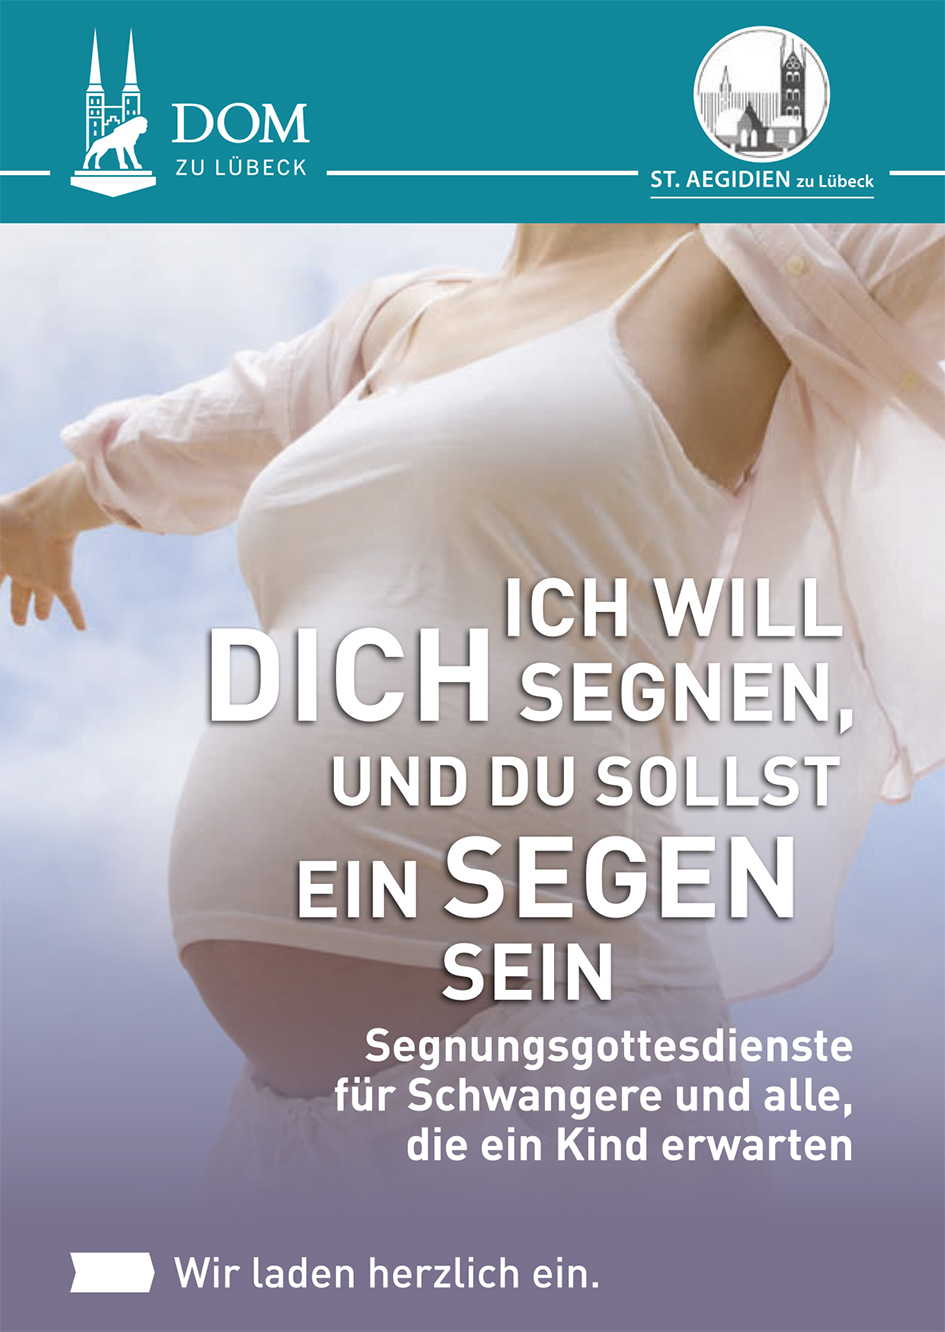 Das Plakat der Segnungsgottesdienst-Reihe. Ein schwangerer Frauenkörper mit dem Slogan "Ich will dich segnen und du sollt ein Segen sein"